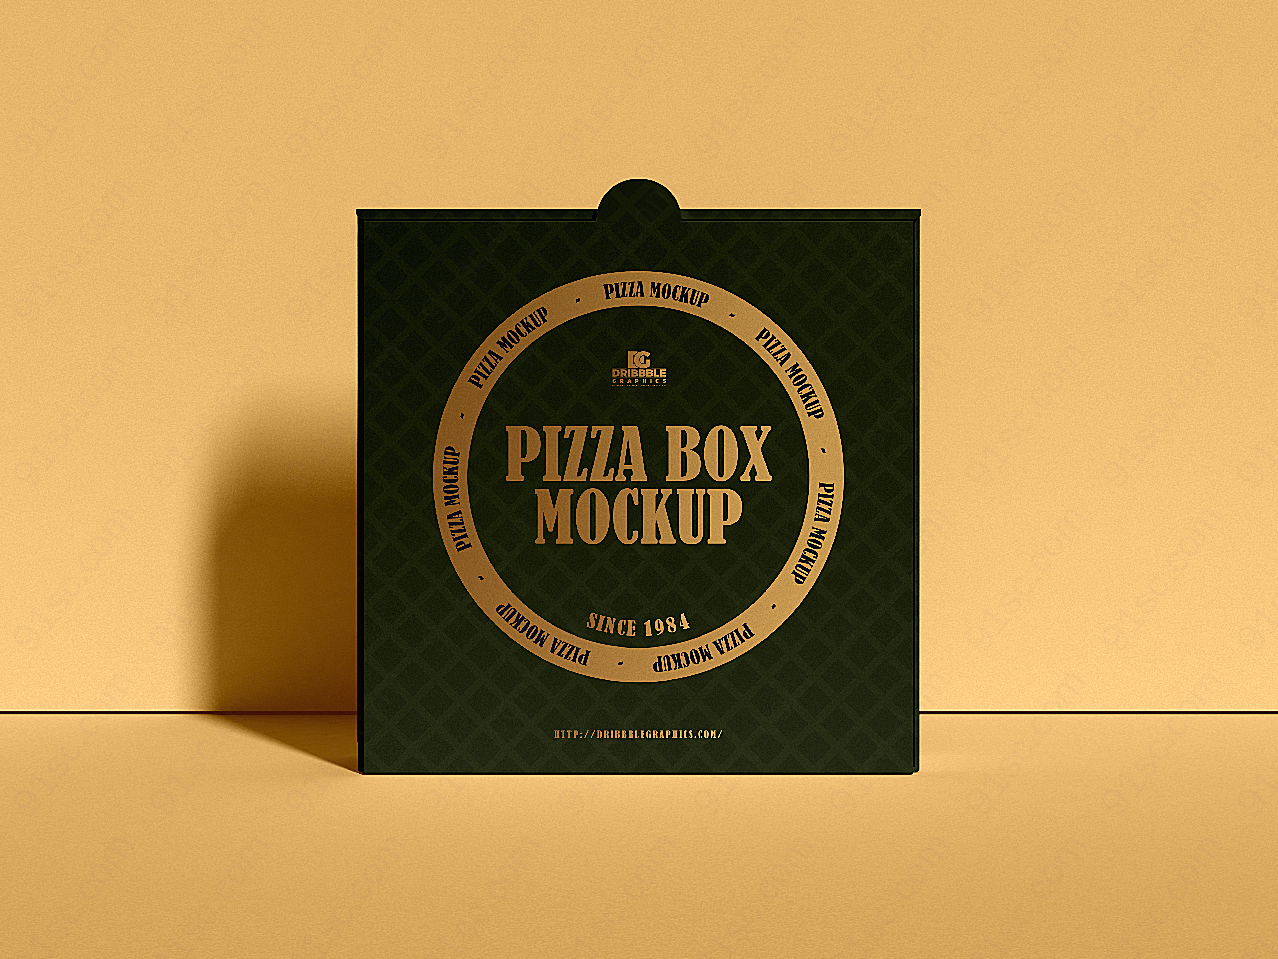 披萨盒包装样机包装设计